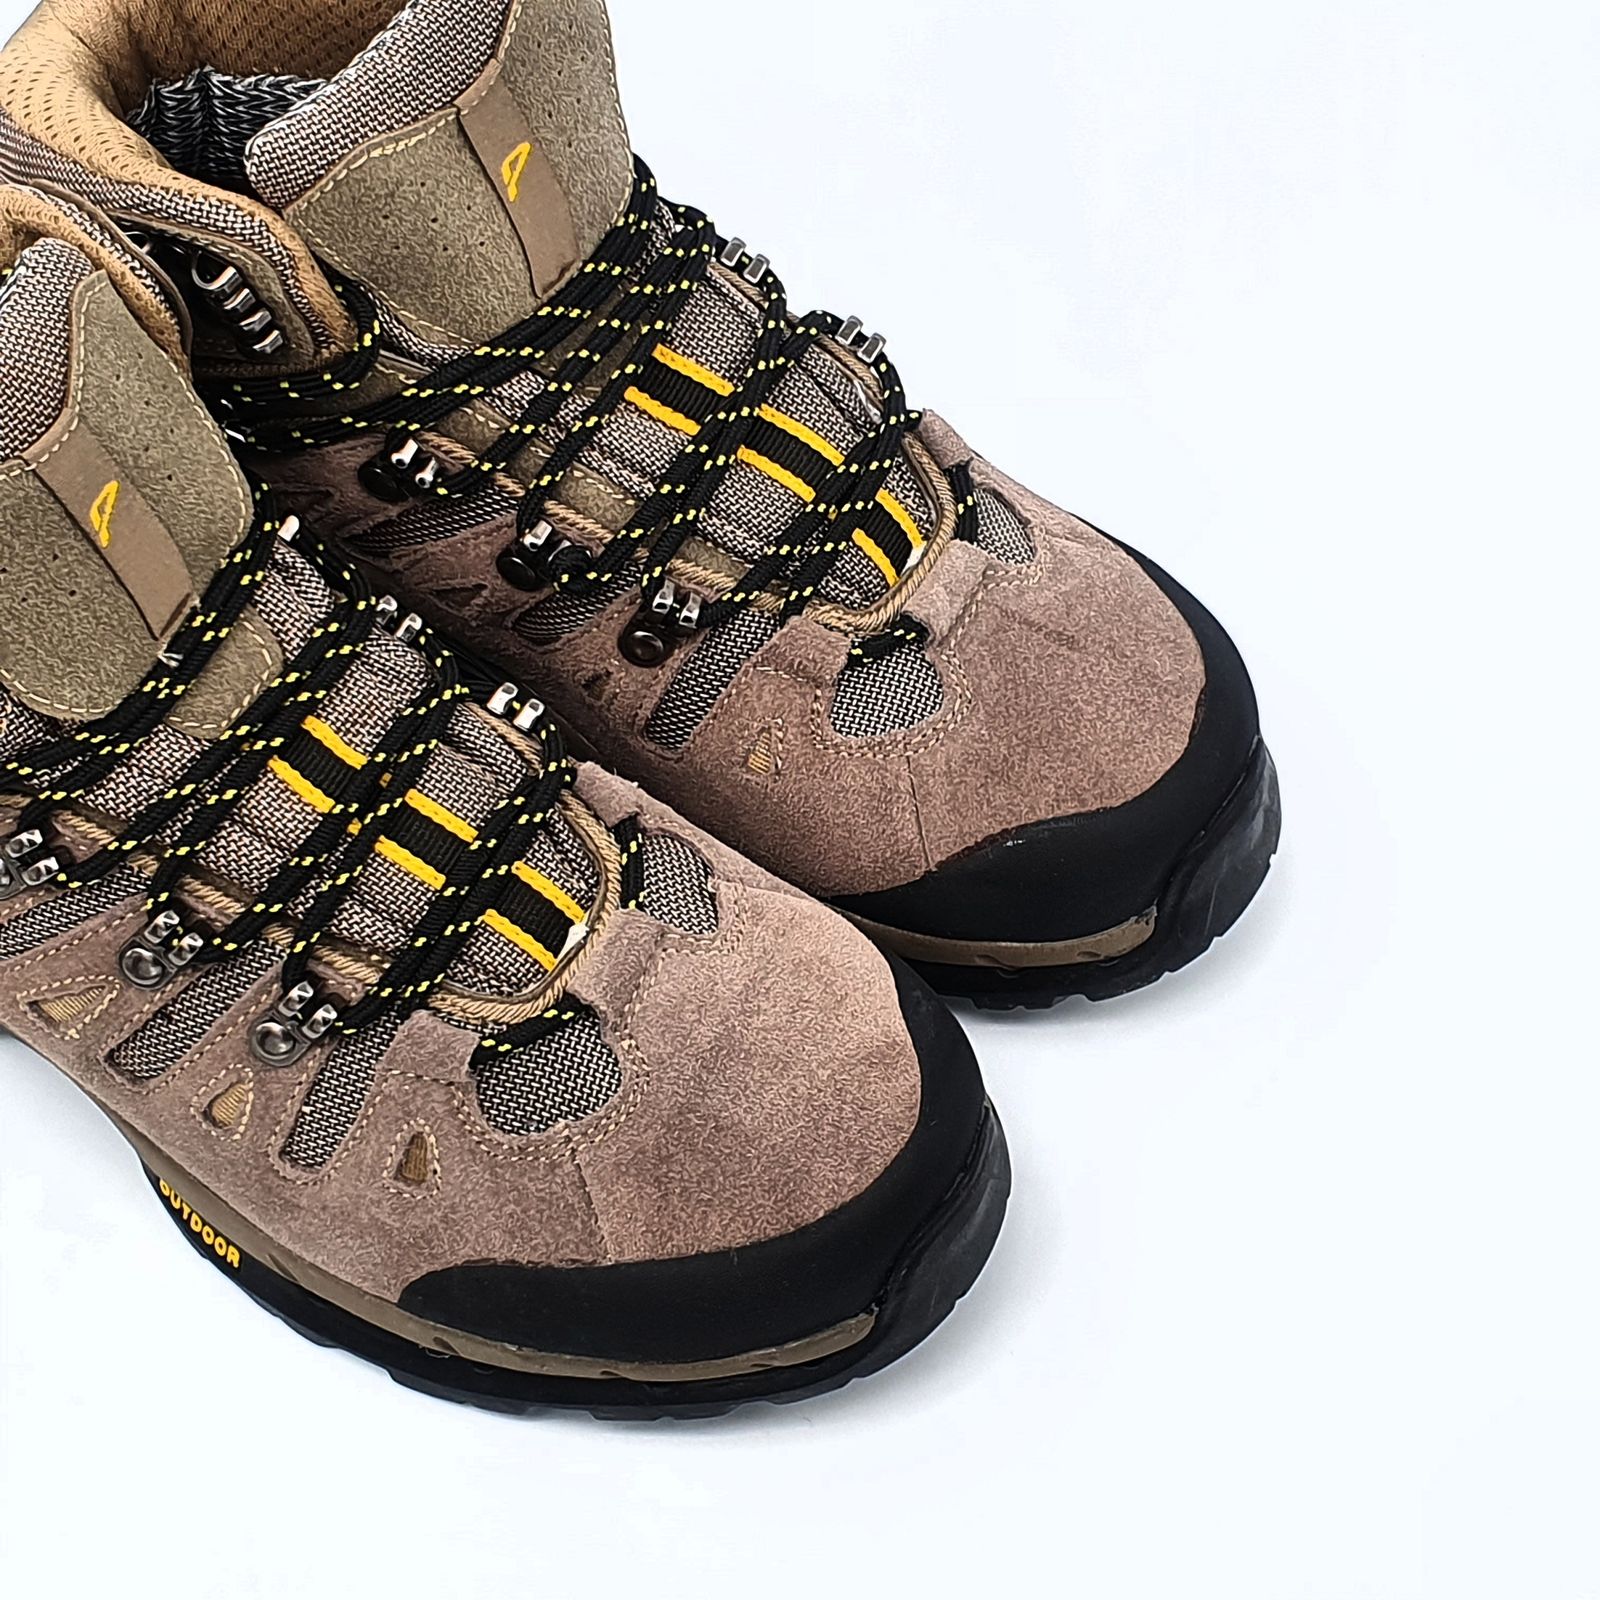 کفش کوهنوردی مردانه پاما مدل NBS-829 کد G1629 -  - 11